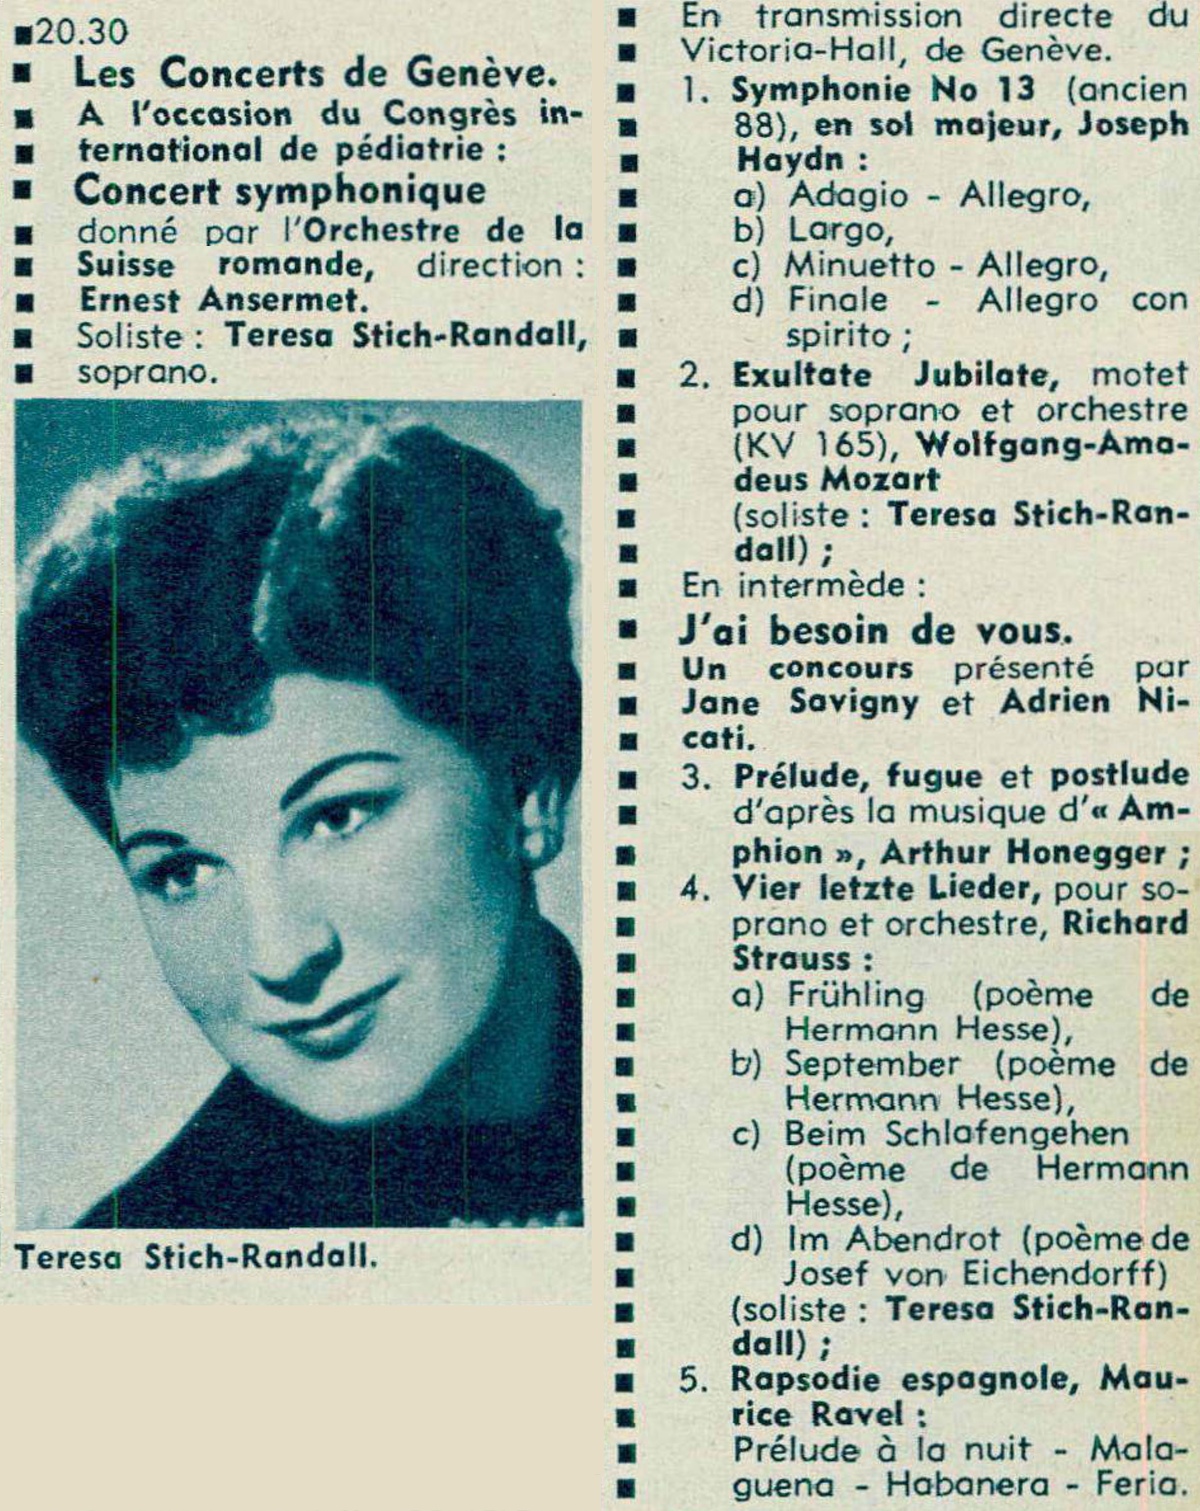 Extrait du programme donné dans la revue Radio TV Je vois tout du 11 mai 1961, No 19, en page 45